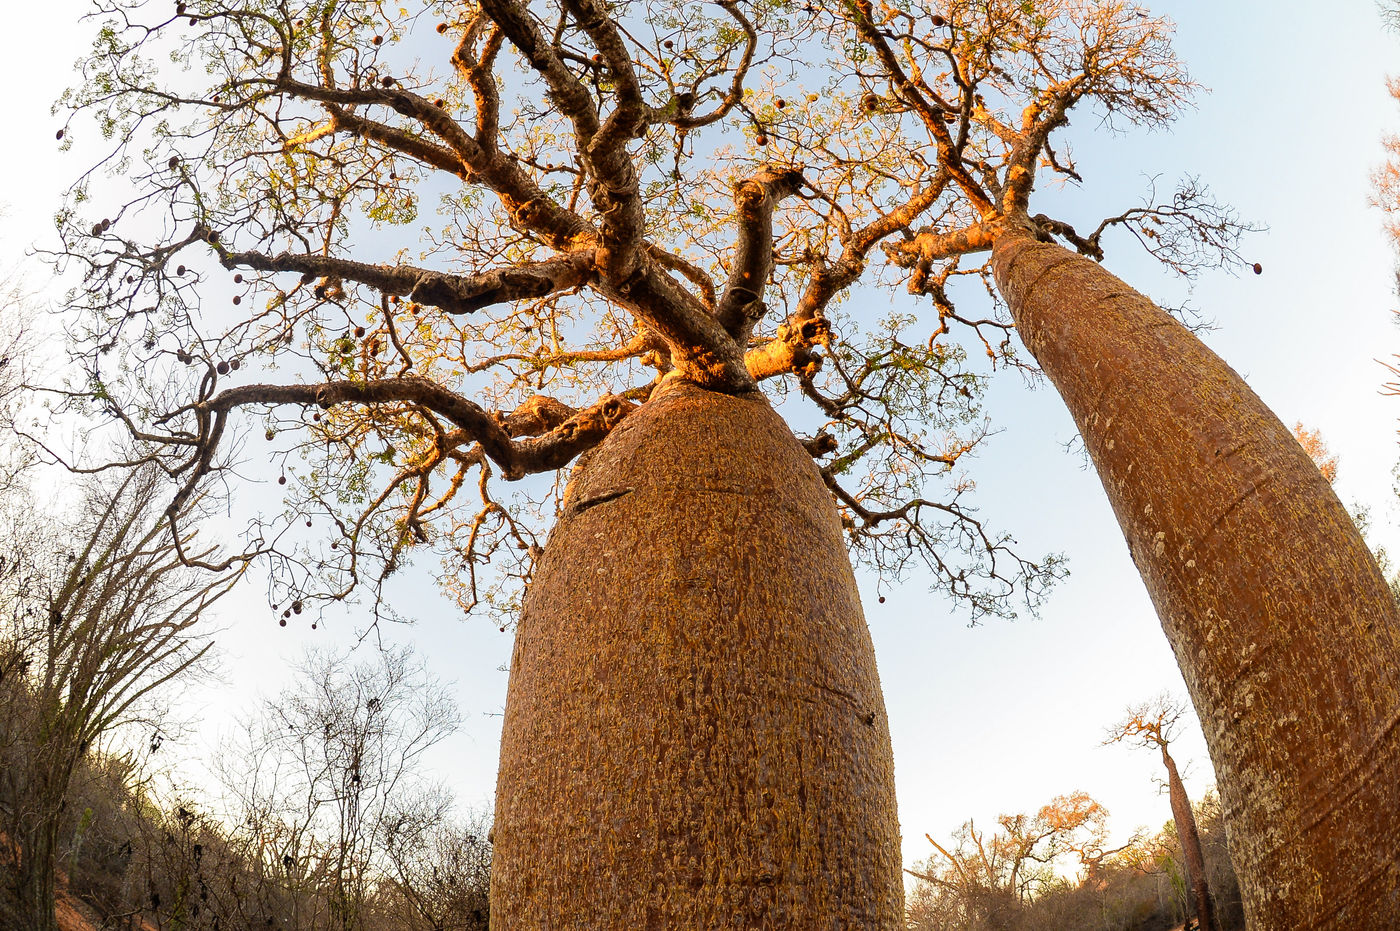 Photographier les baobabs avec le fisheye donne des images uniques. © Billy Herman